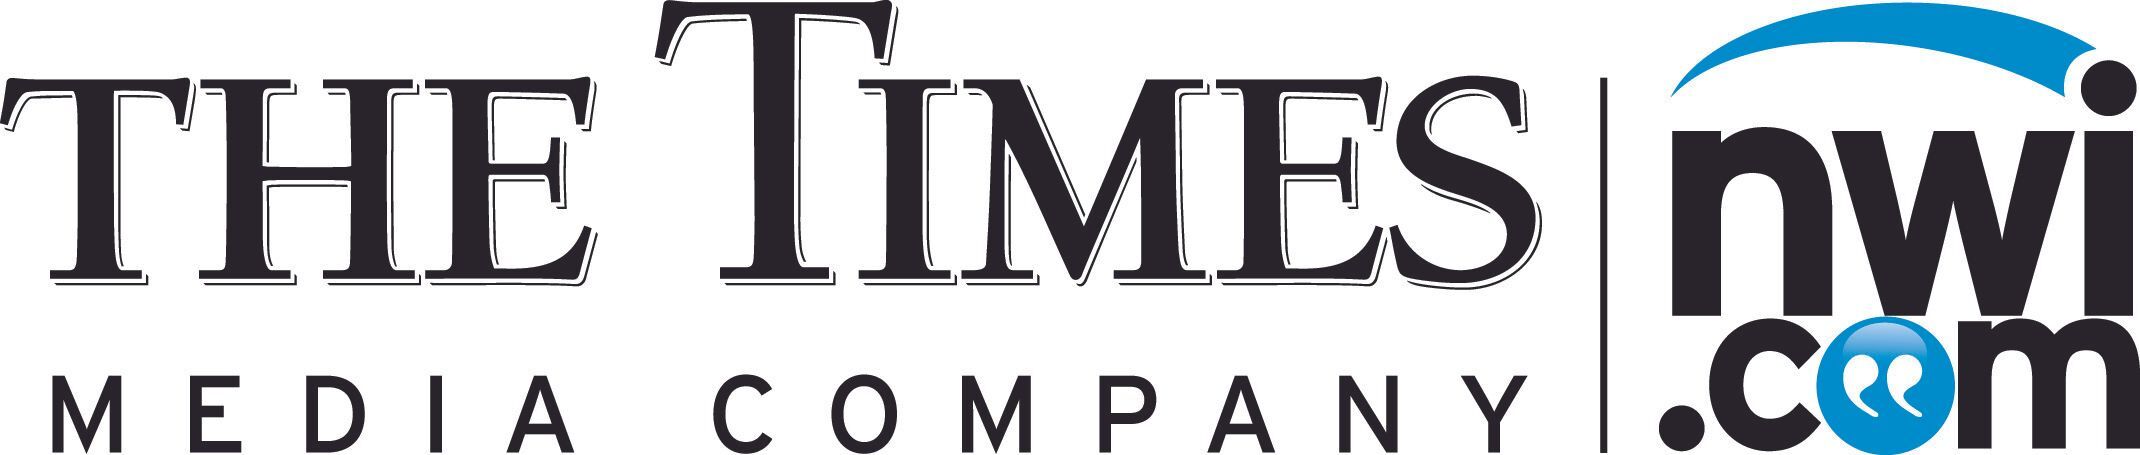 The Times Media Company